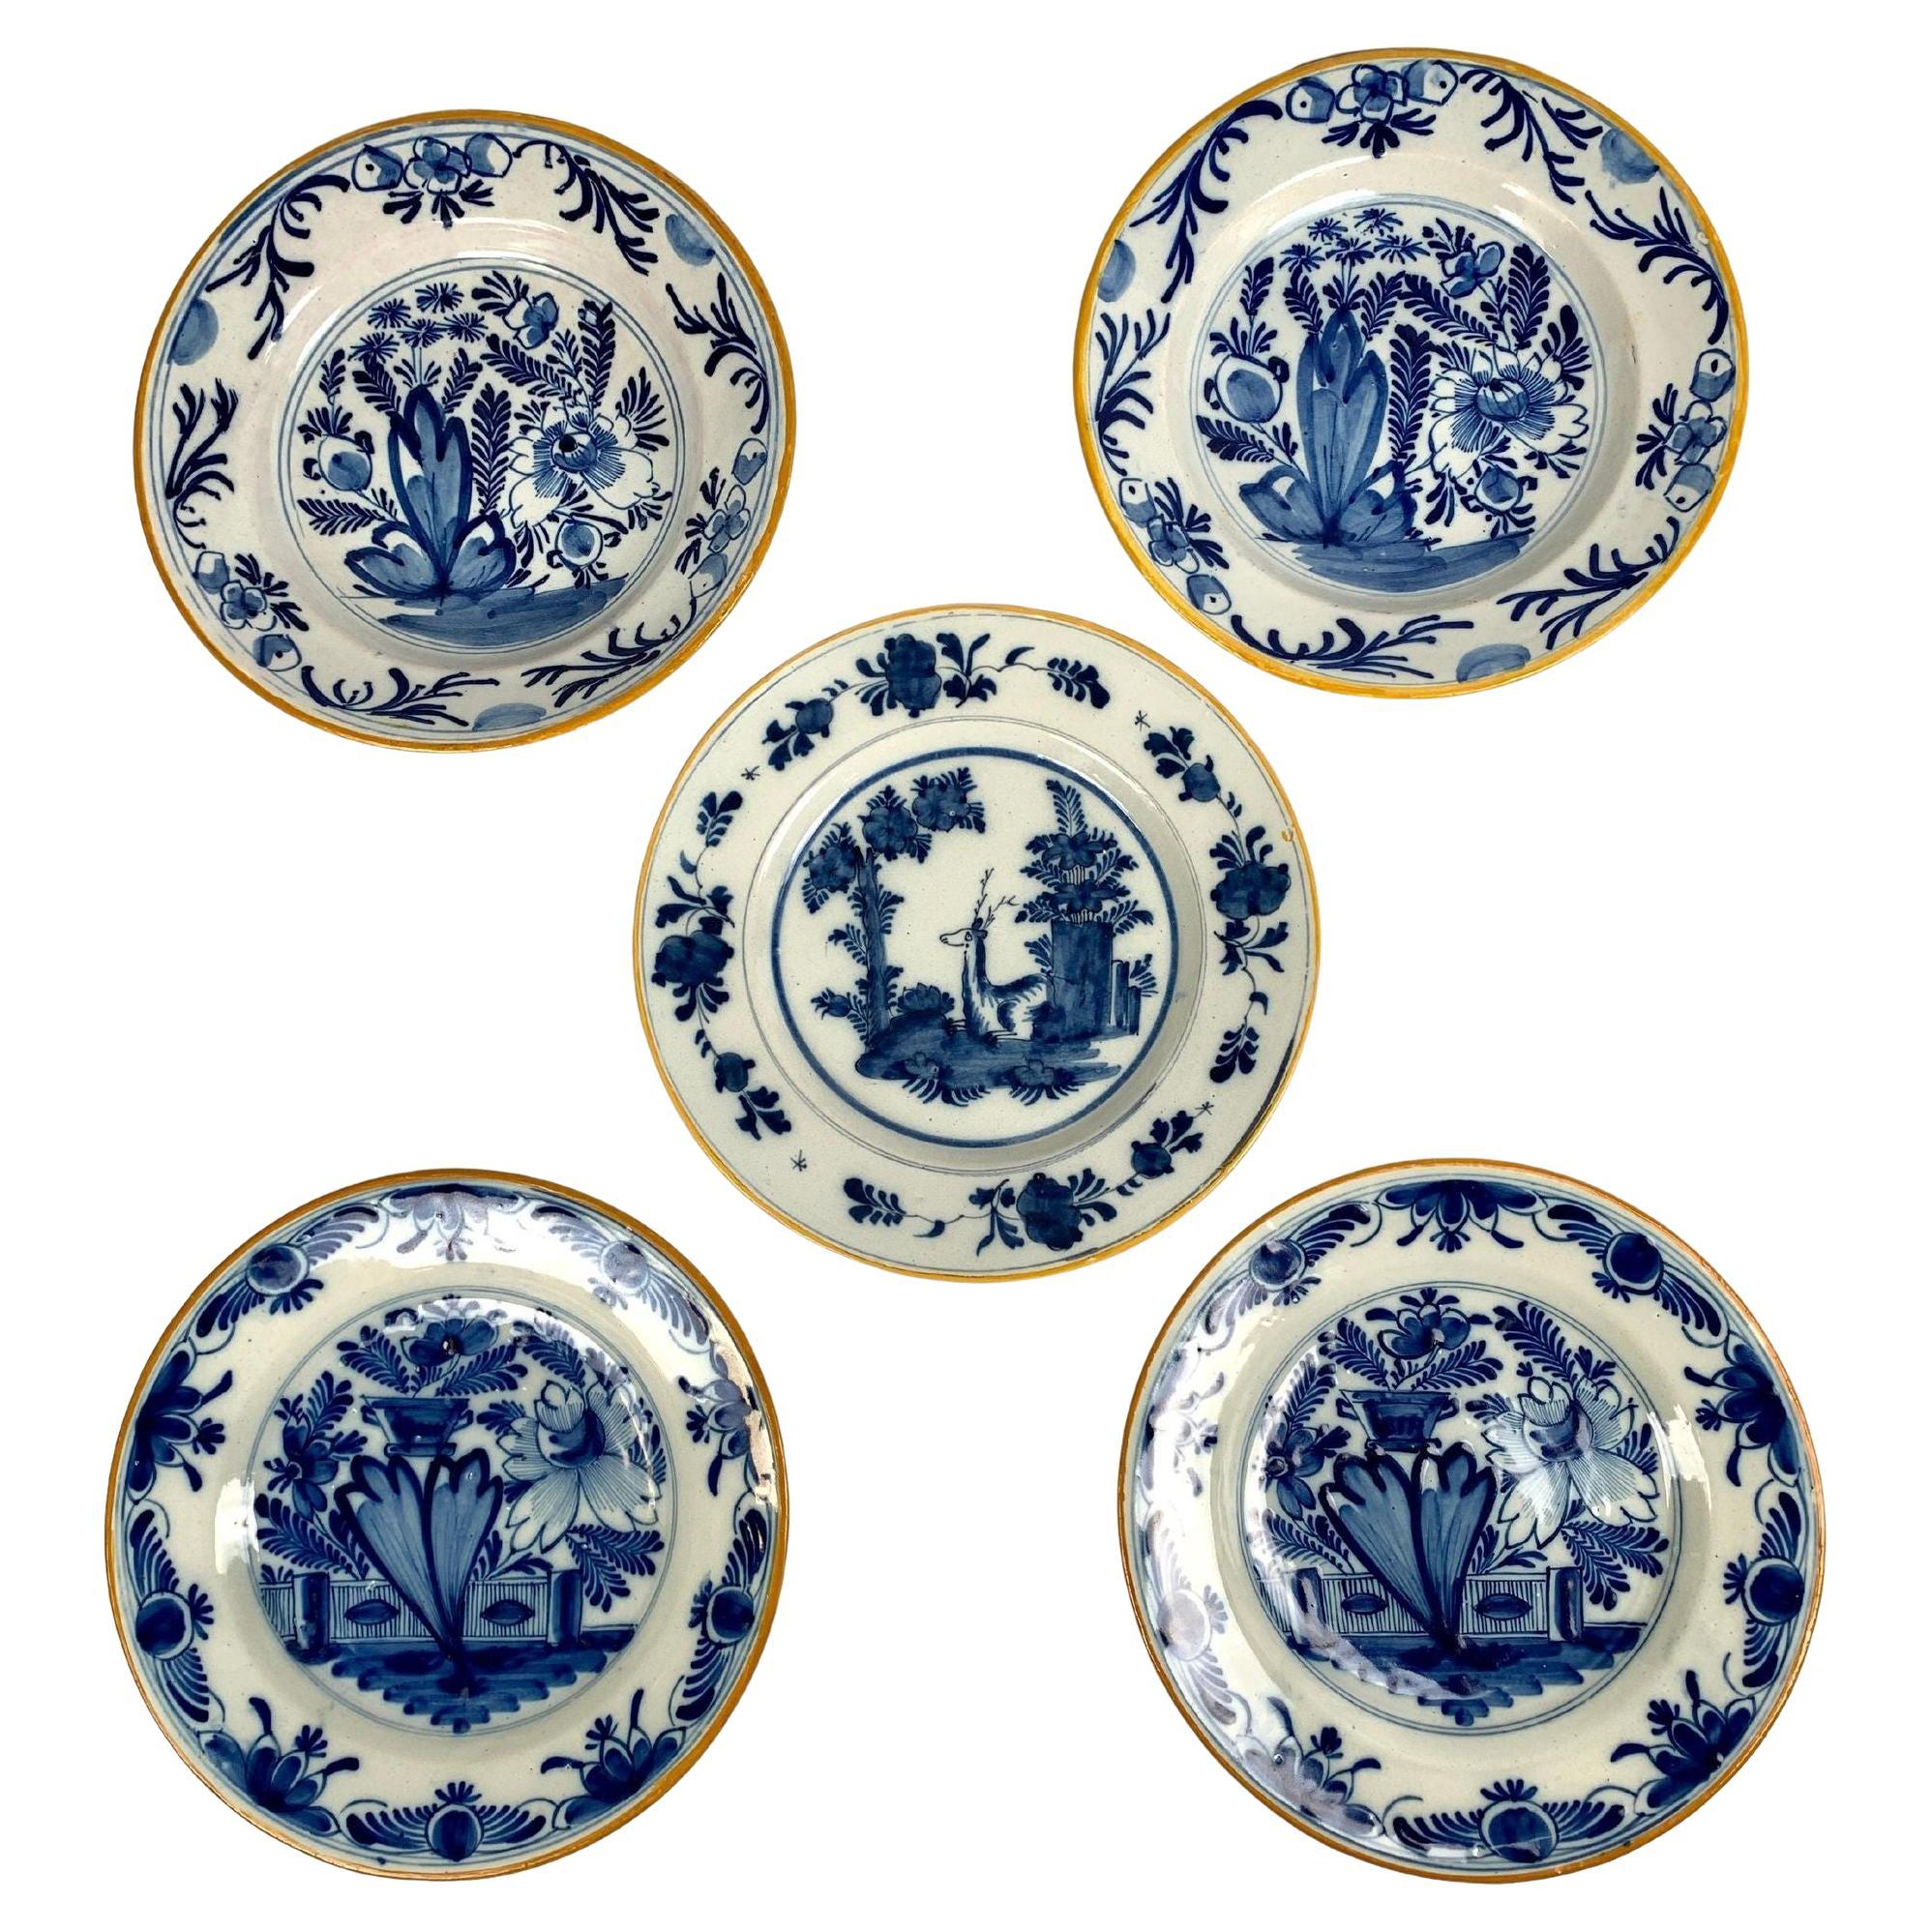 Cinq assiettes ou plats de Delft bleu et blanc peints à la main, Pays-Bas, vers 1800